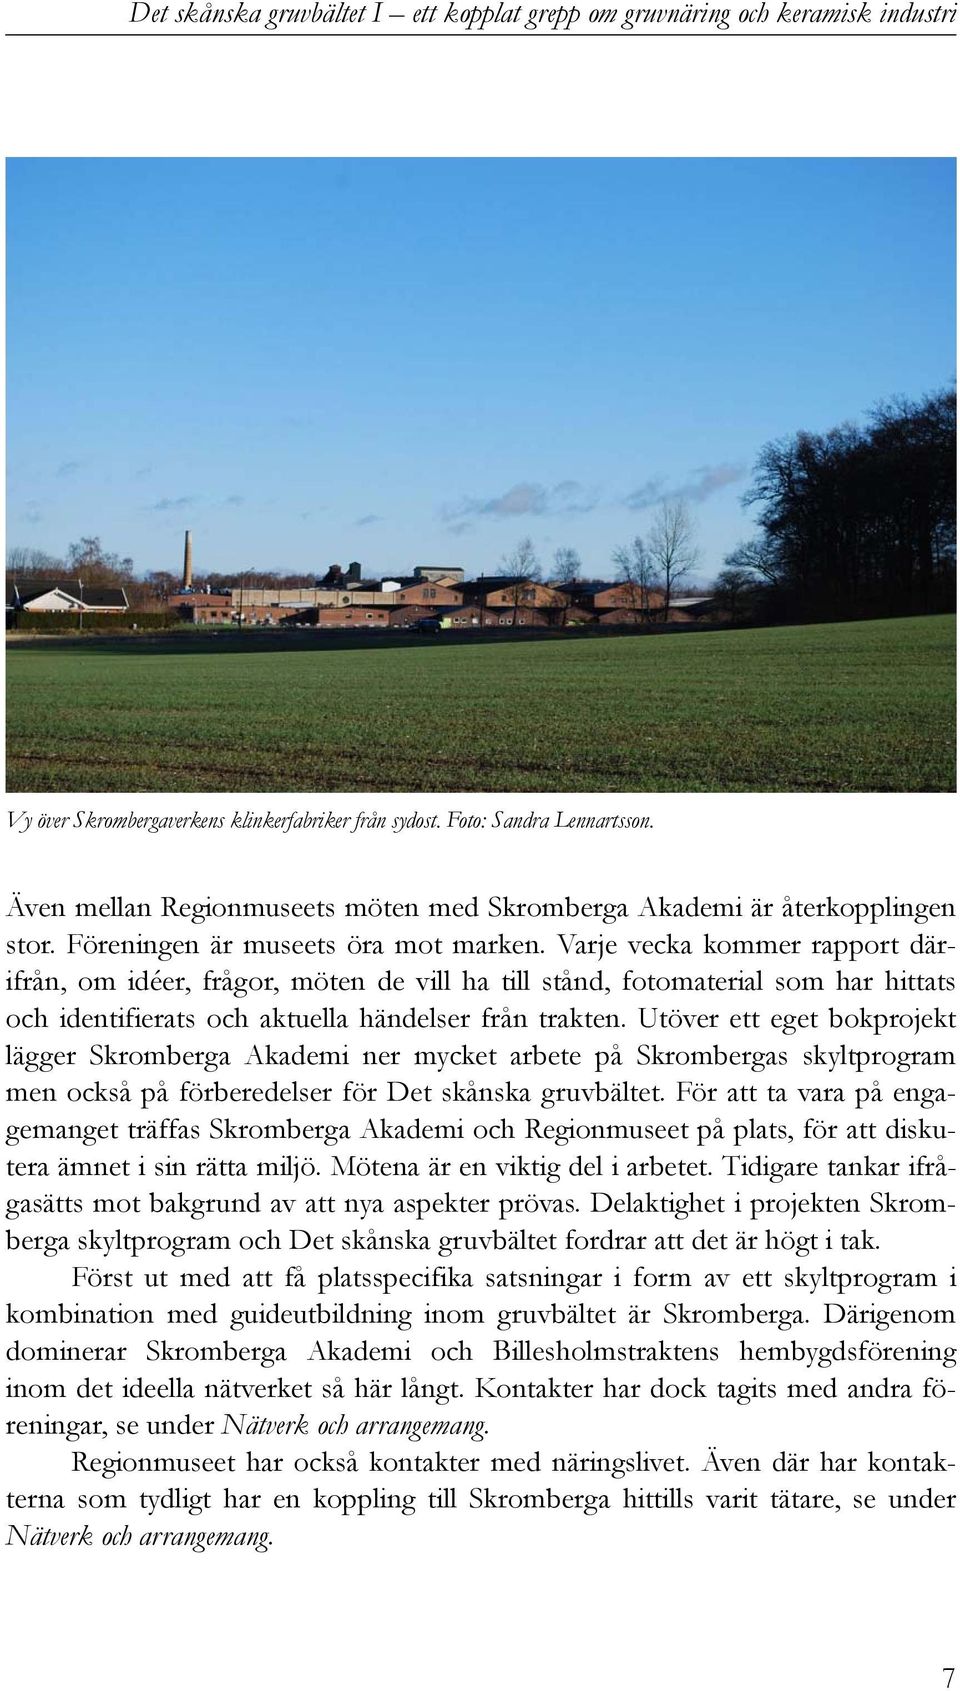 Utöver ett eget bokprojekt lägger Skromberga Akademi ner mycket arbete på Skrombergas skyltprogram men också på förberedelser för Det skånska gruvbältet.